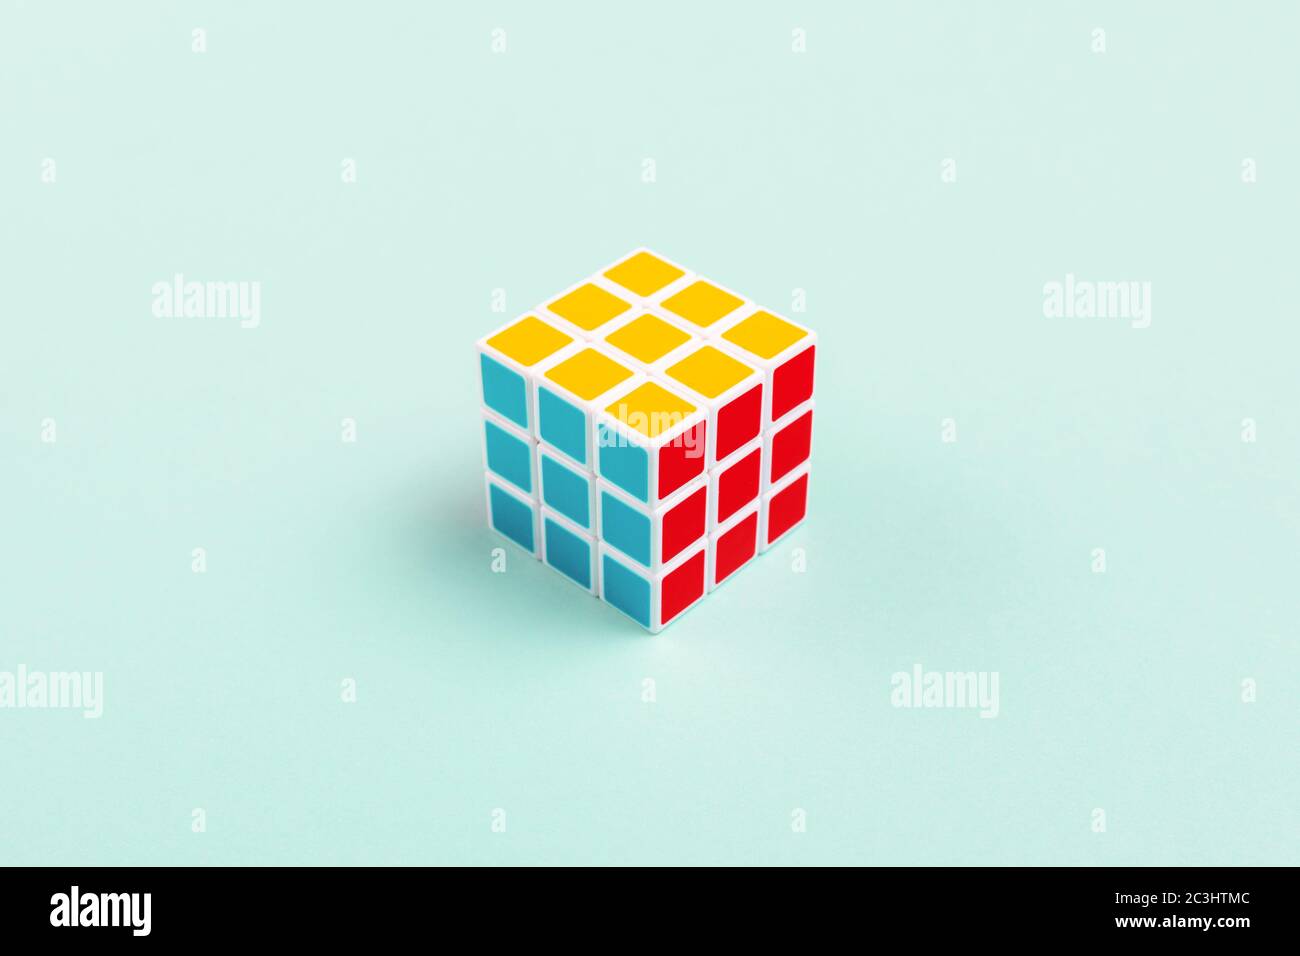 NOVI SAD, SERBIA - 10 GIUGNO 2018: Cubo di Rubik, originariamente chiamato Magic Cube, inventato da uno scultore ungherese e professore di architettura Erno Rubi Foto Stock